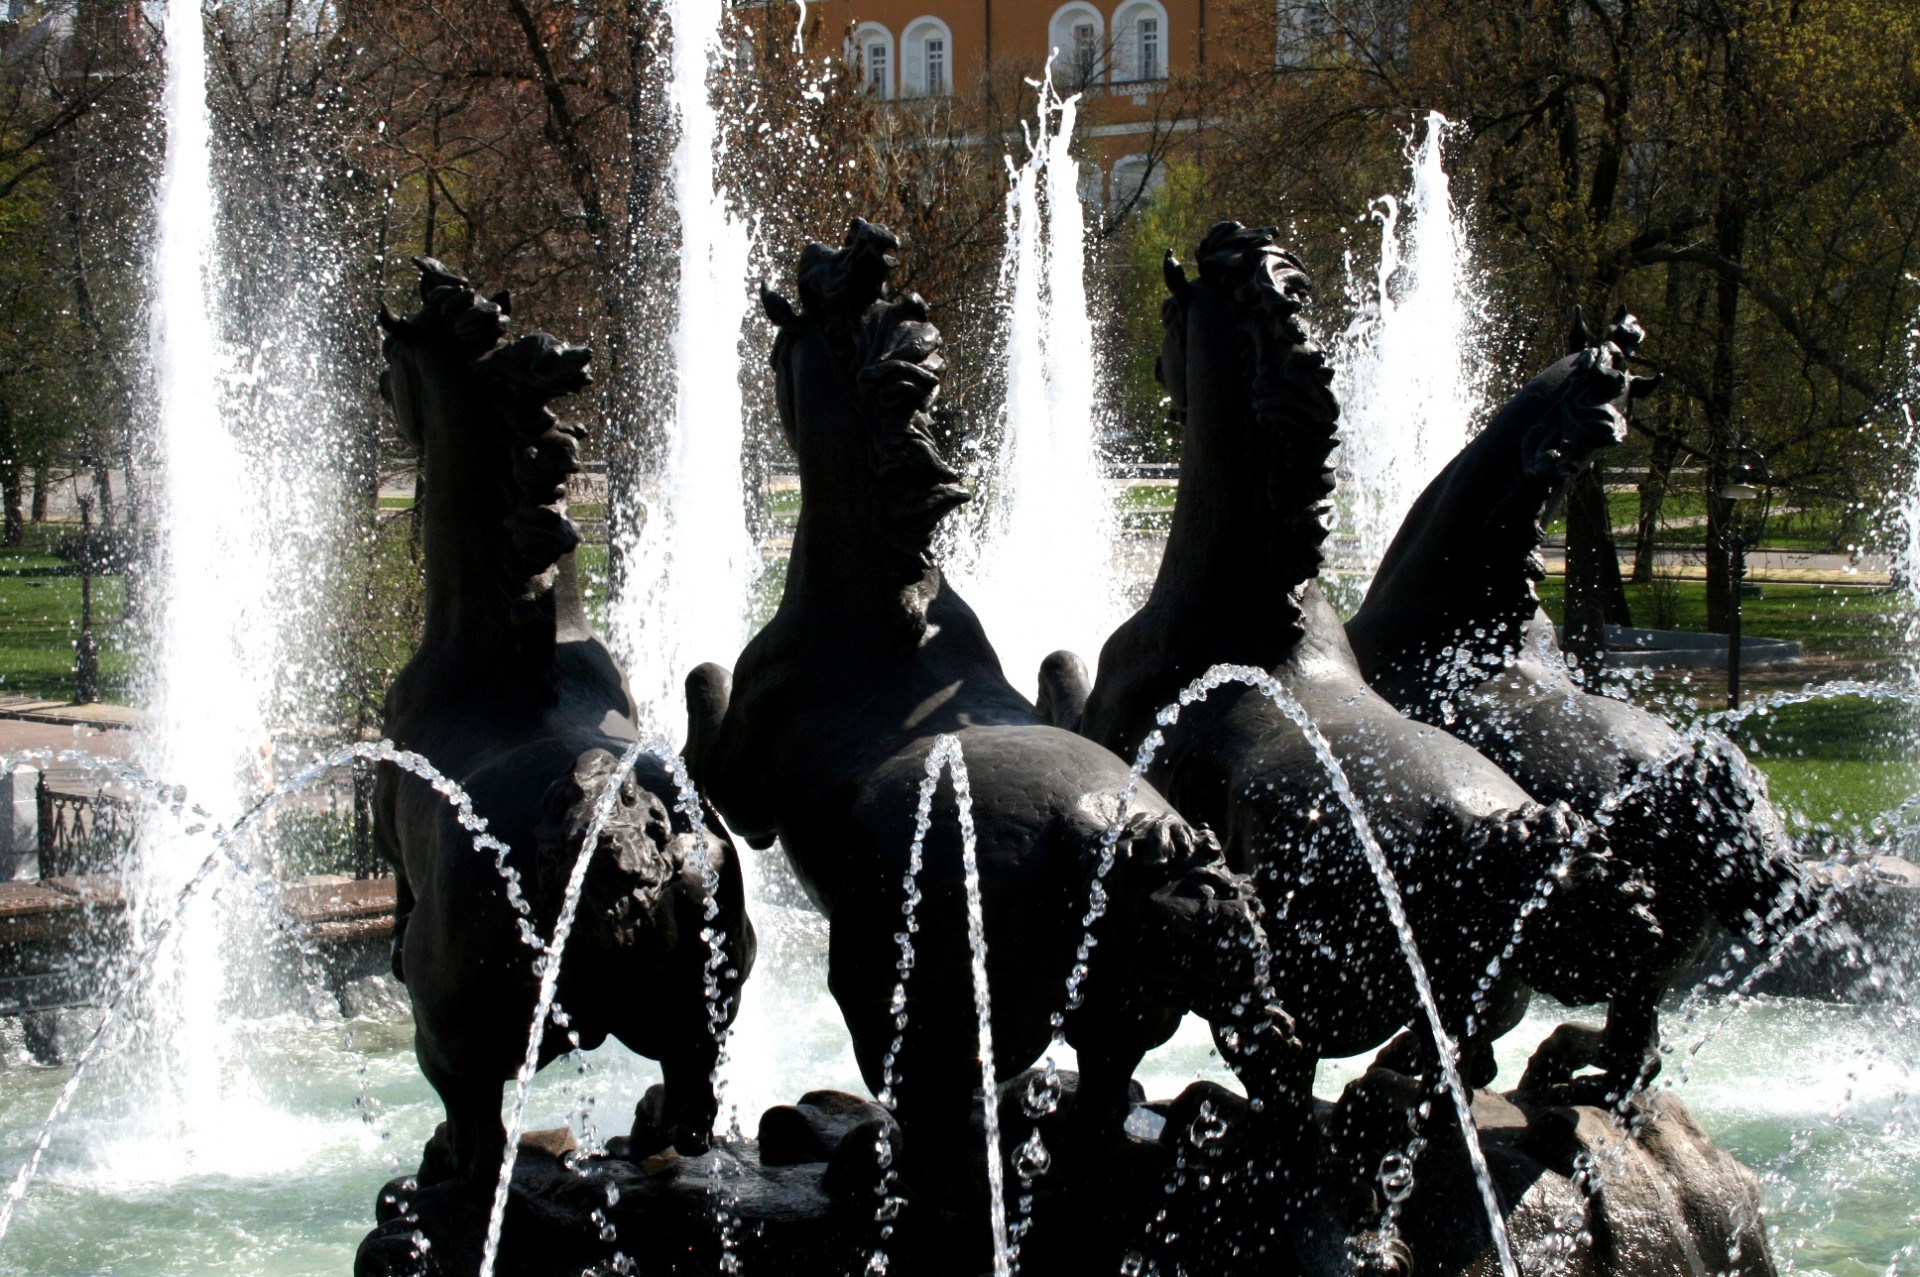 fountain spouting water spray free photo